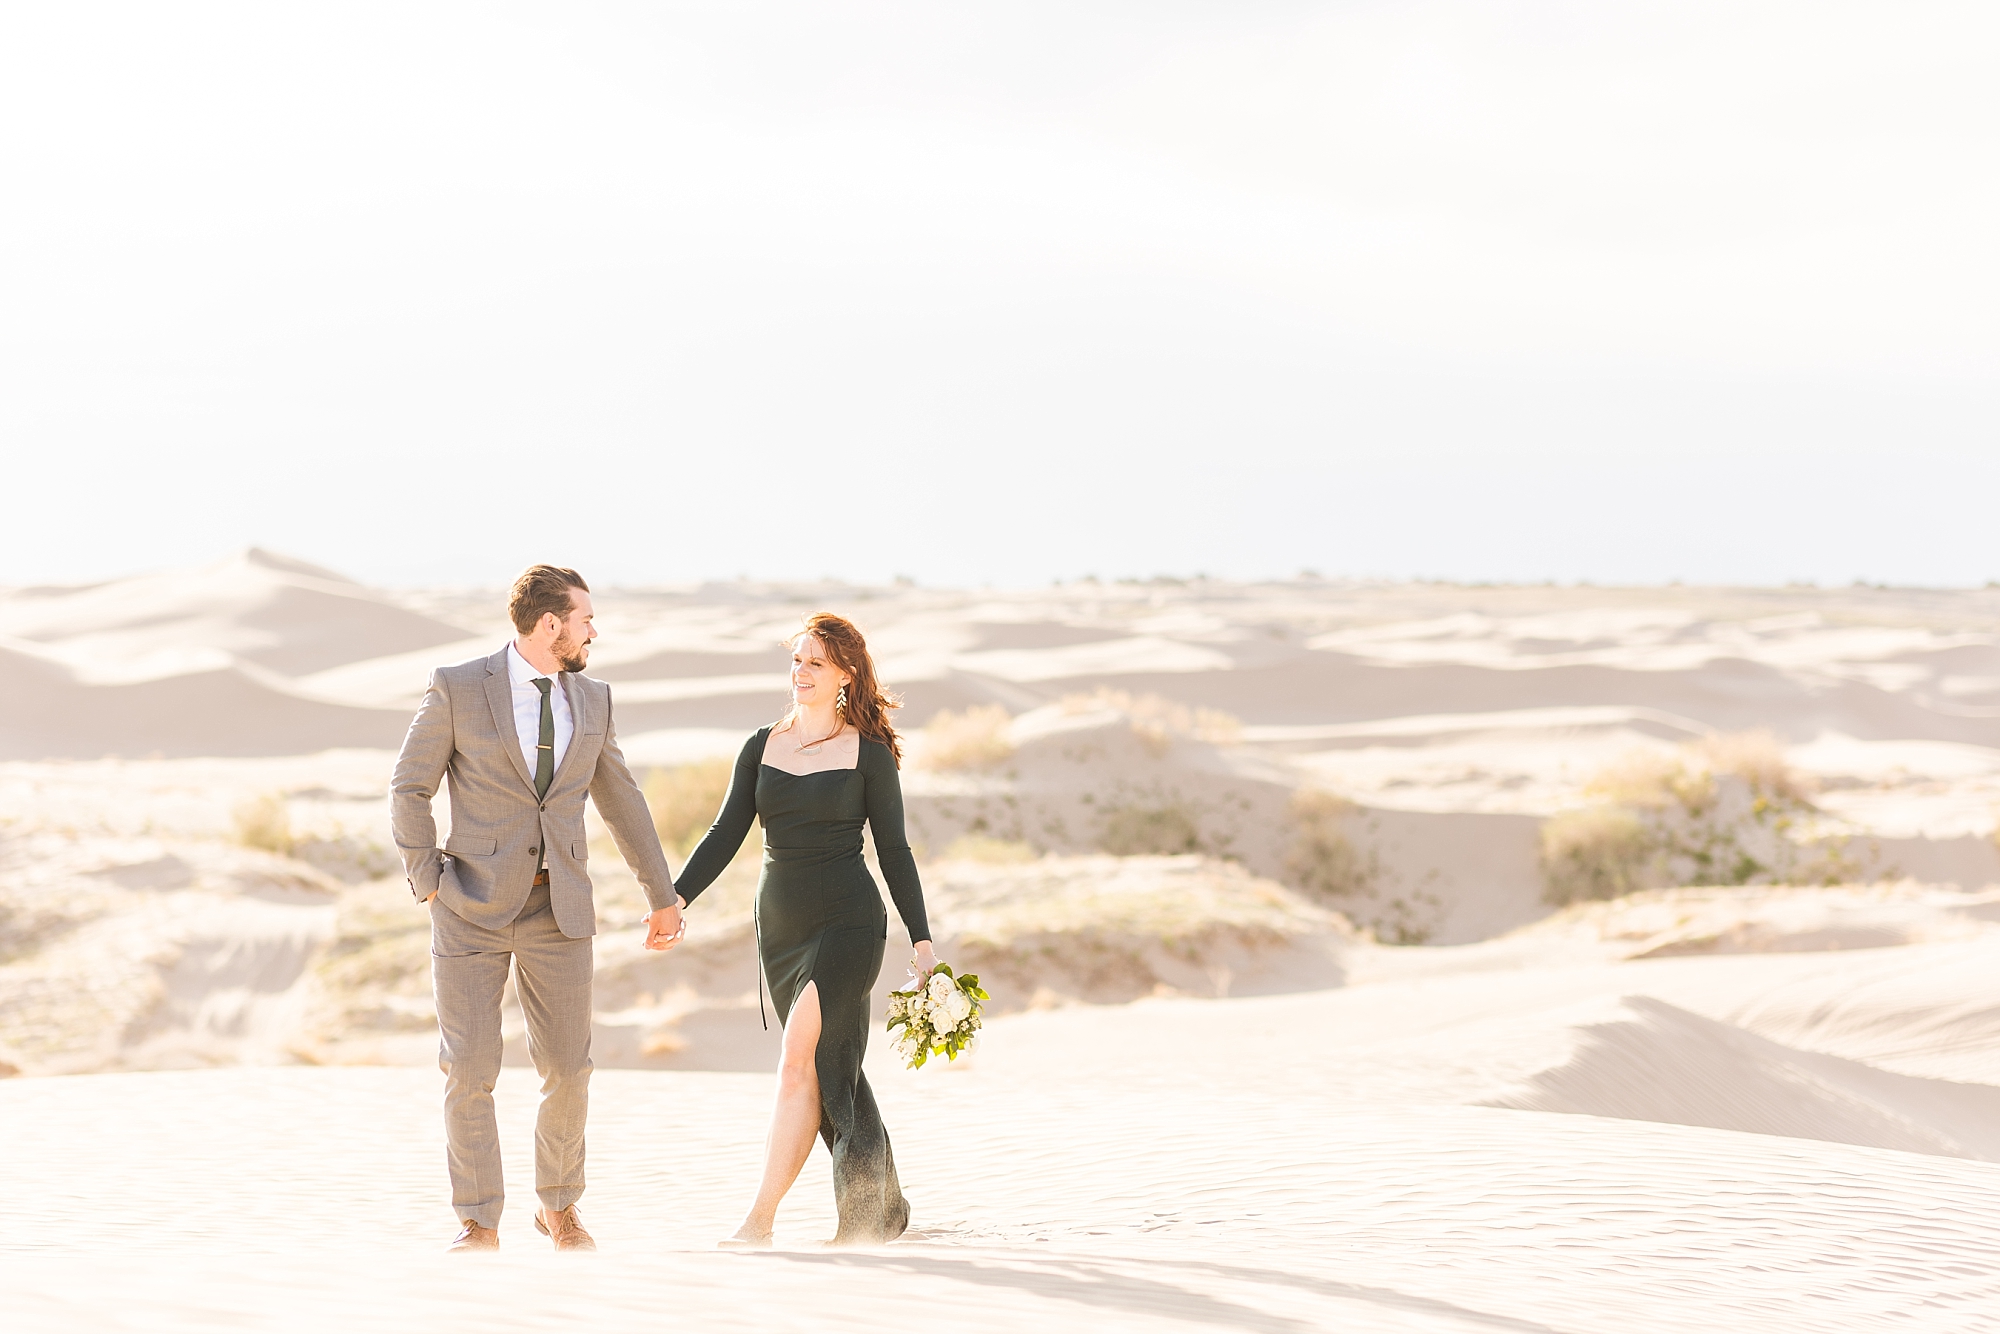 Wandering weddings. Getting lost in the Little Sahara desert in Utah